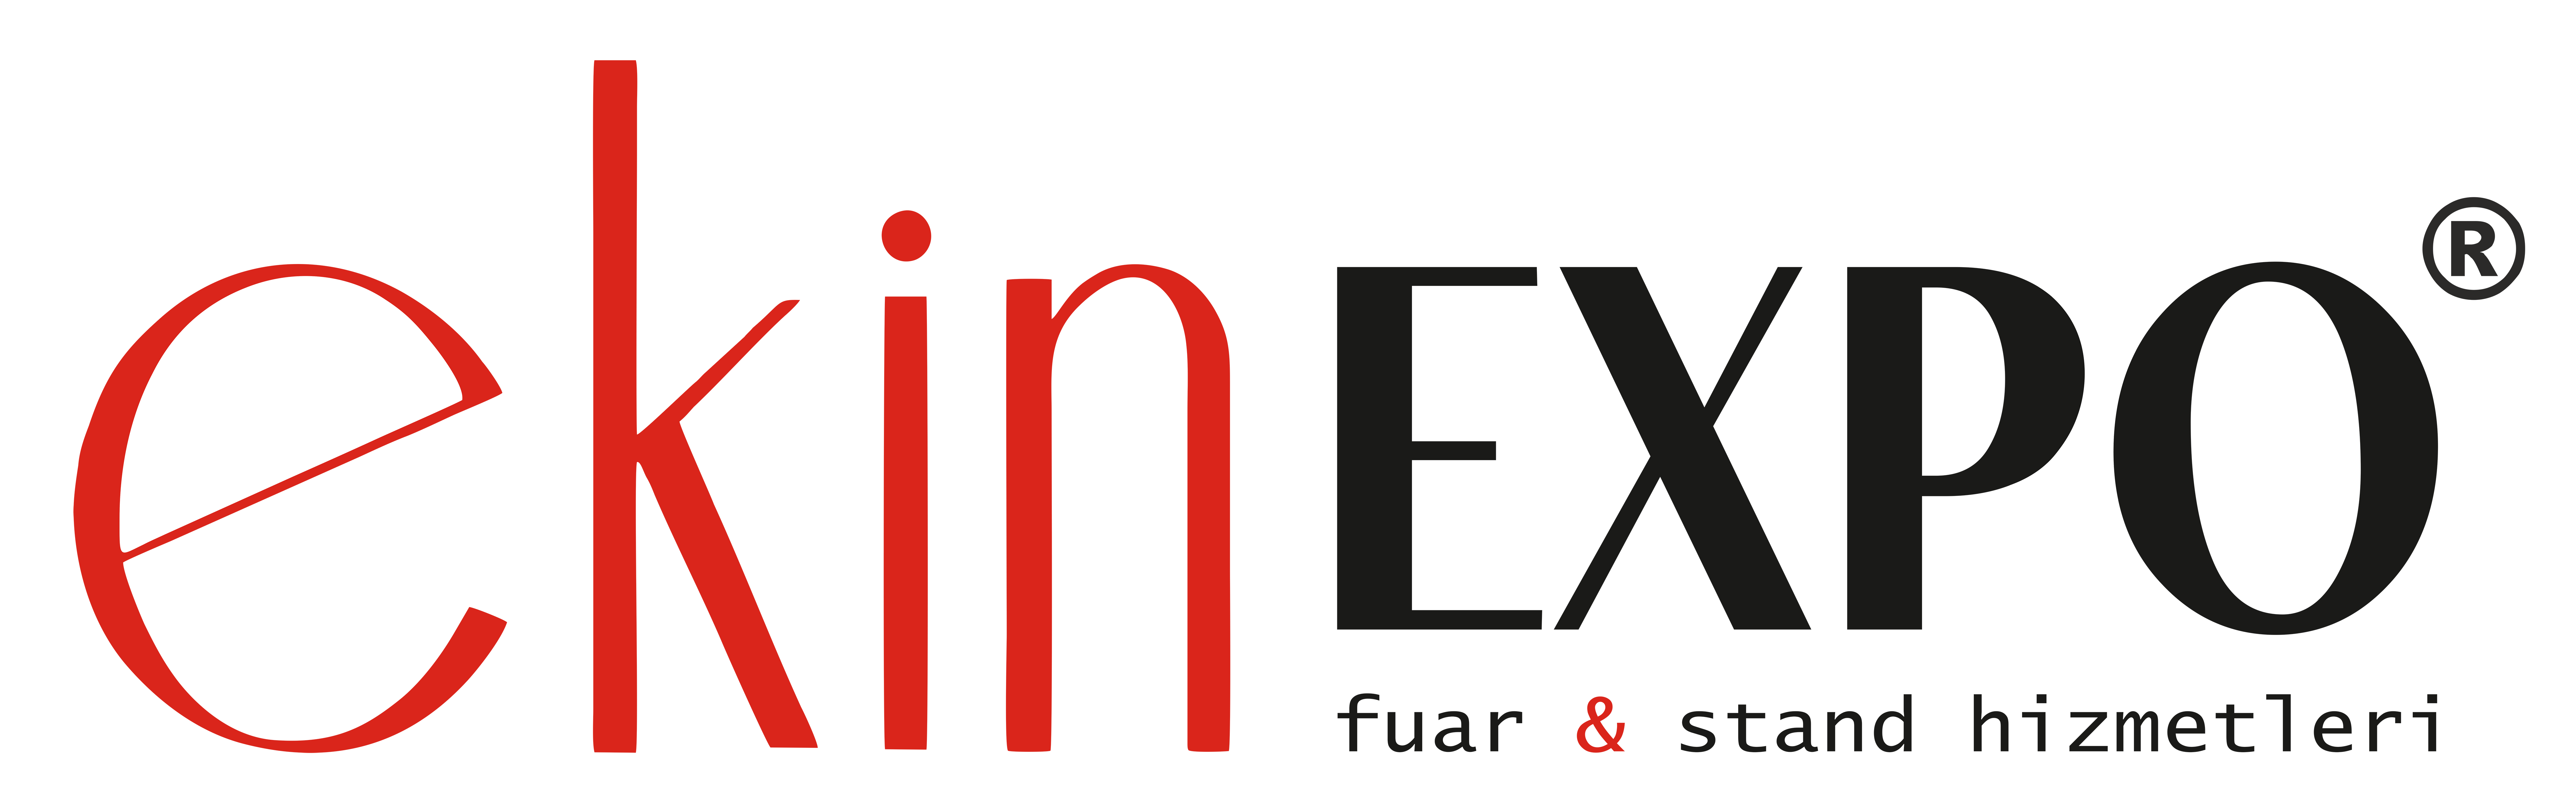 Ekinexpo Fuar ve Stand Hizmetleri San. ve Tic. Ltd. Şti.